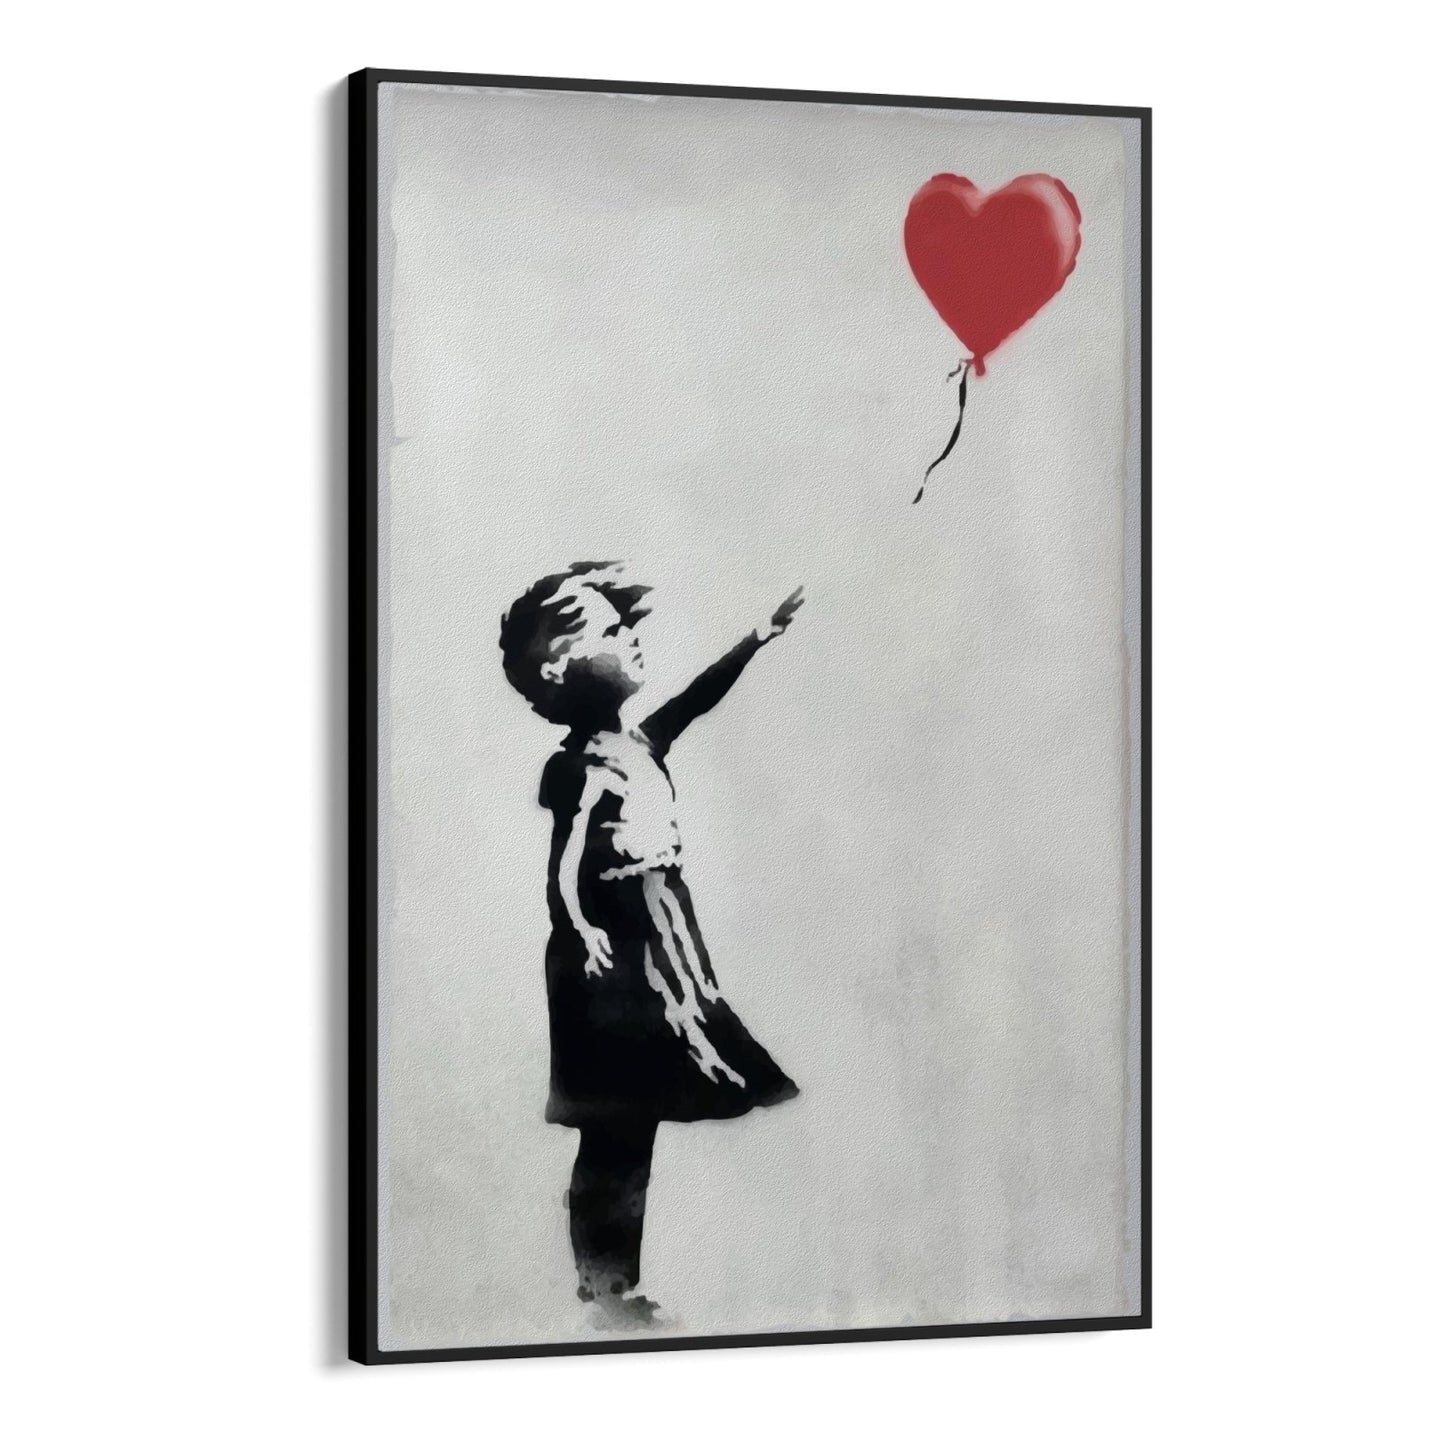 Balónové dievča, Banksy